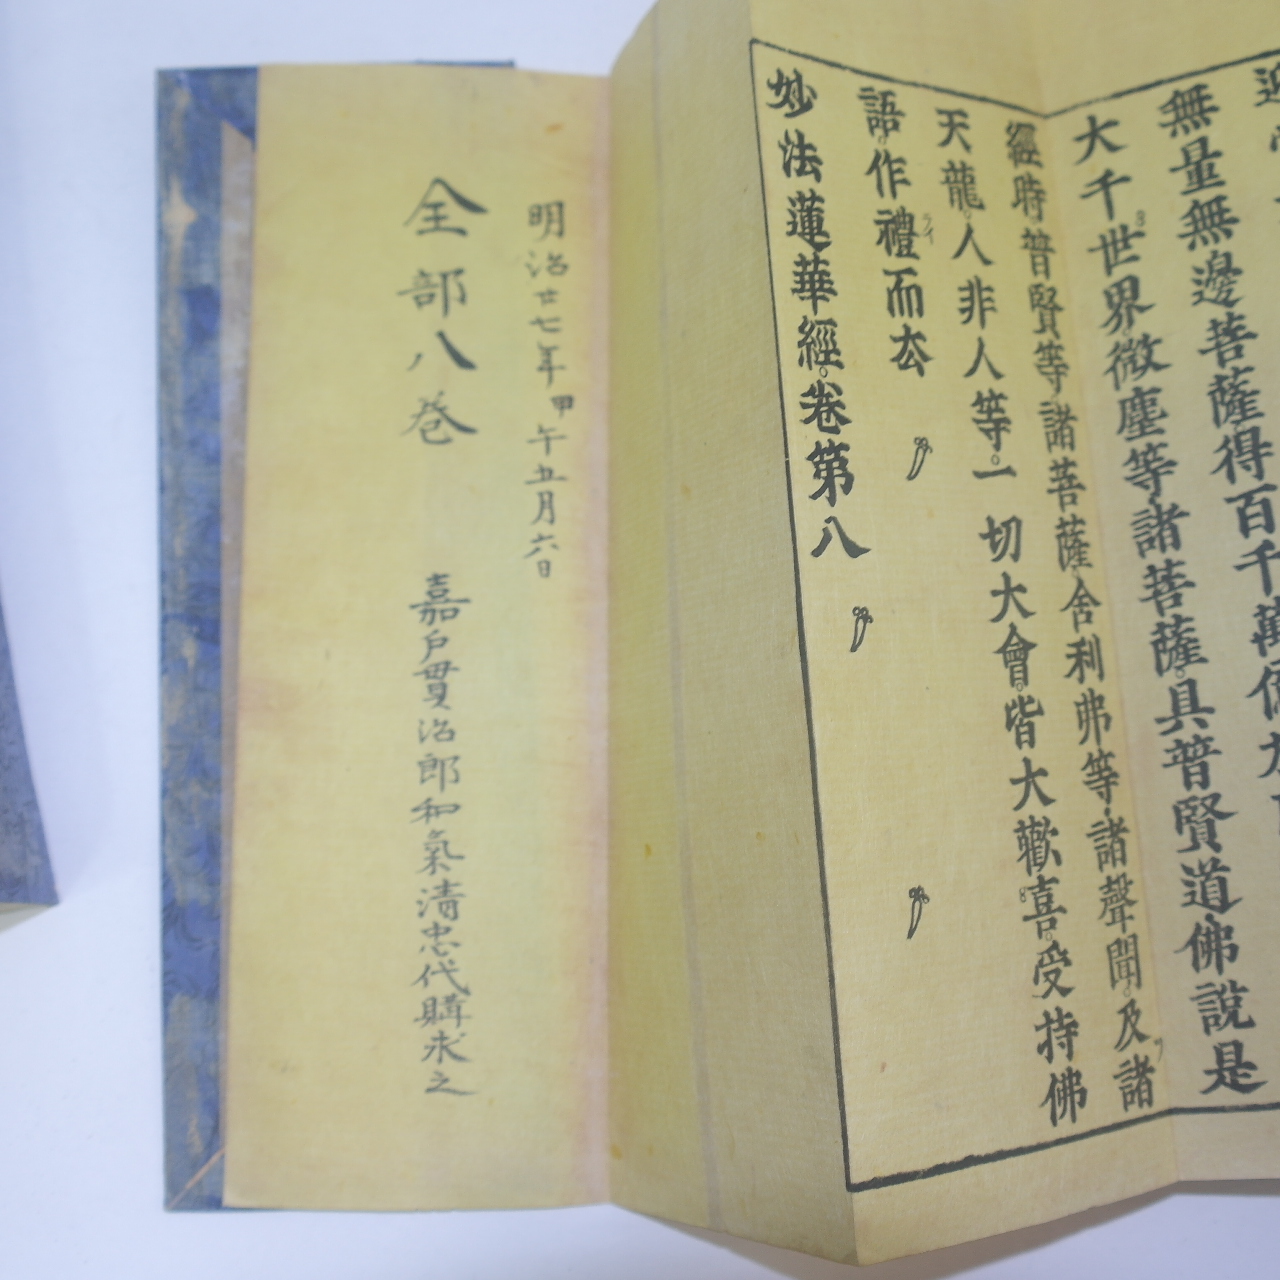 1894년(明治27年)필사 시주기가 있는 화지에 치자물을 들인 목판본 불경 묘법연화경 8책완질